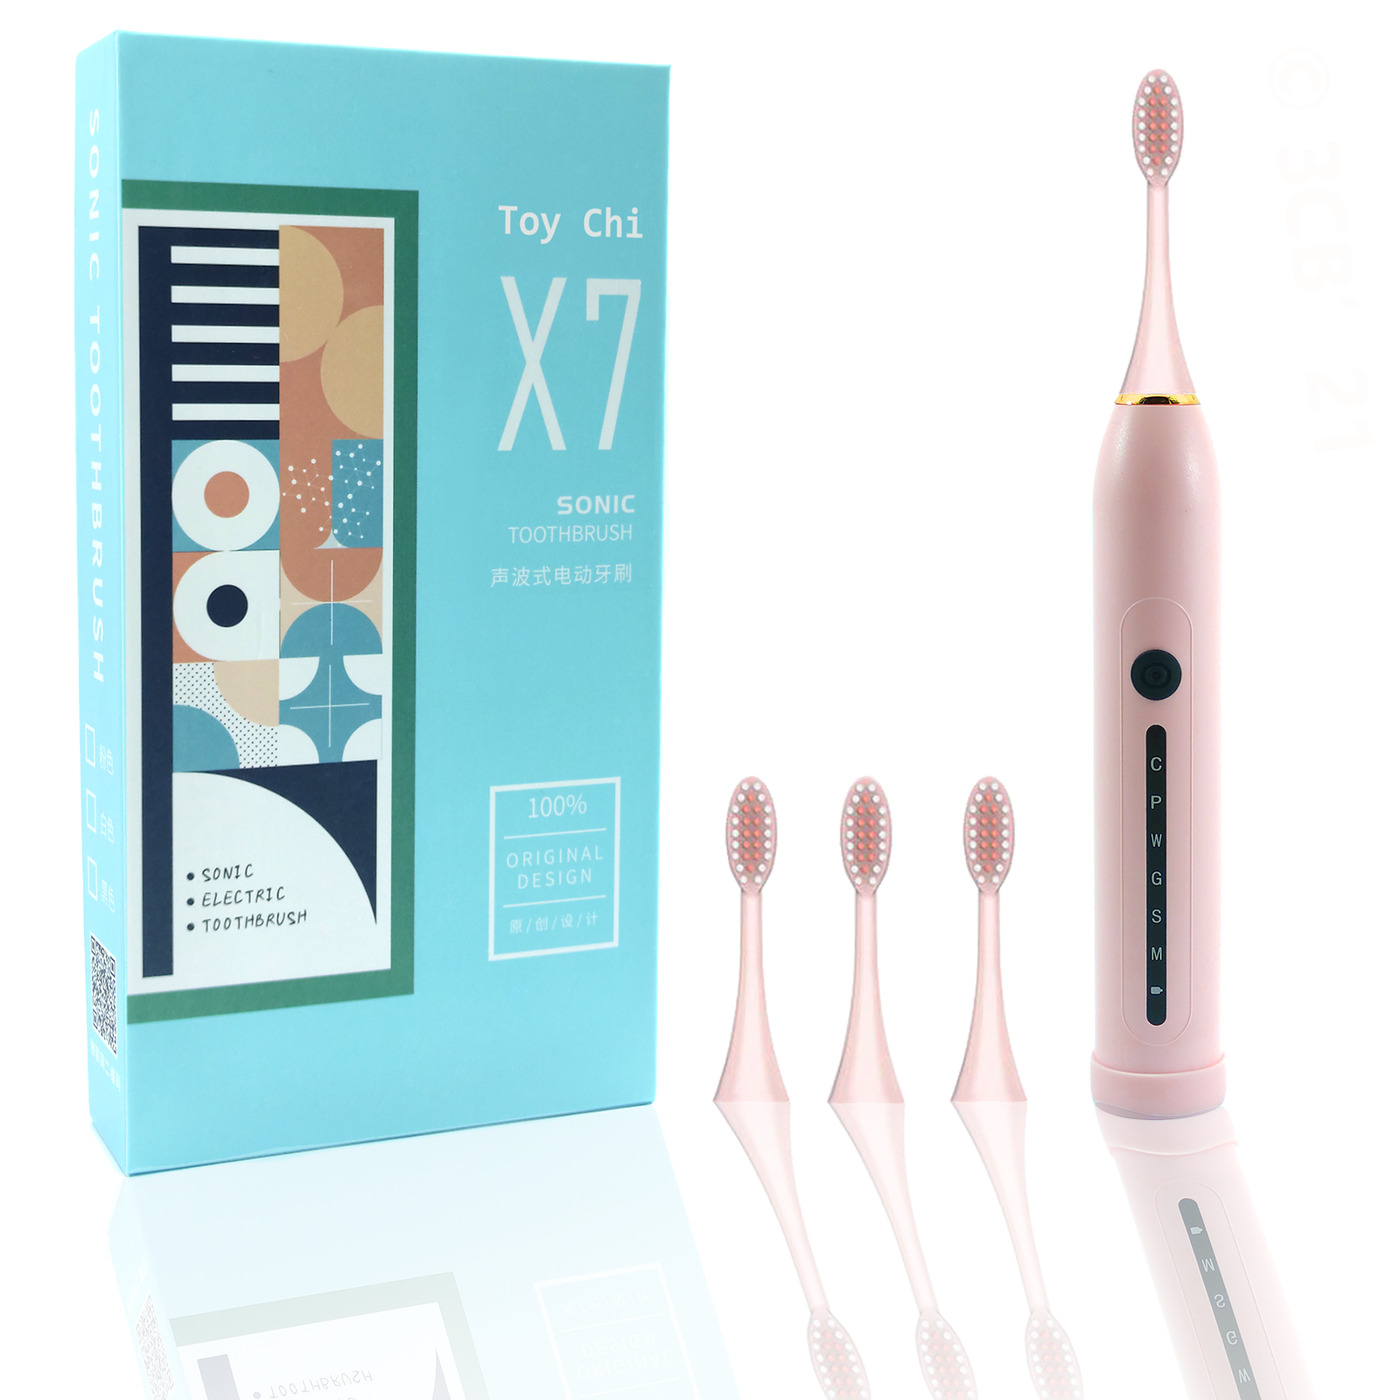 Электрическая зубная щетка ультразвуковая Toy Chi X7 SONIC Toothbrush, розовая электрическая зубная щетка usmile sonic ys1 розовая